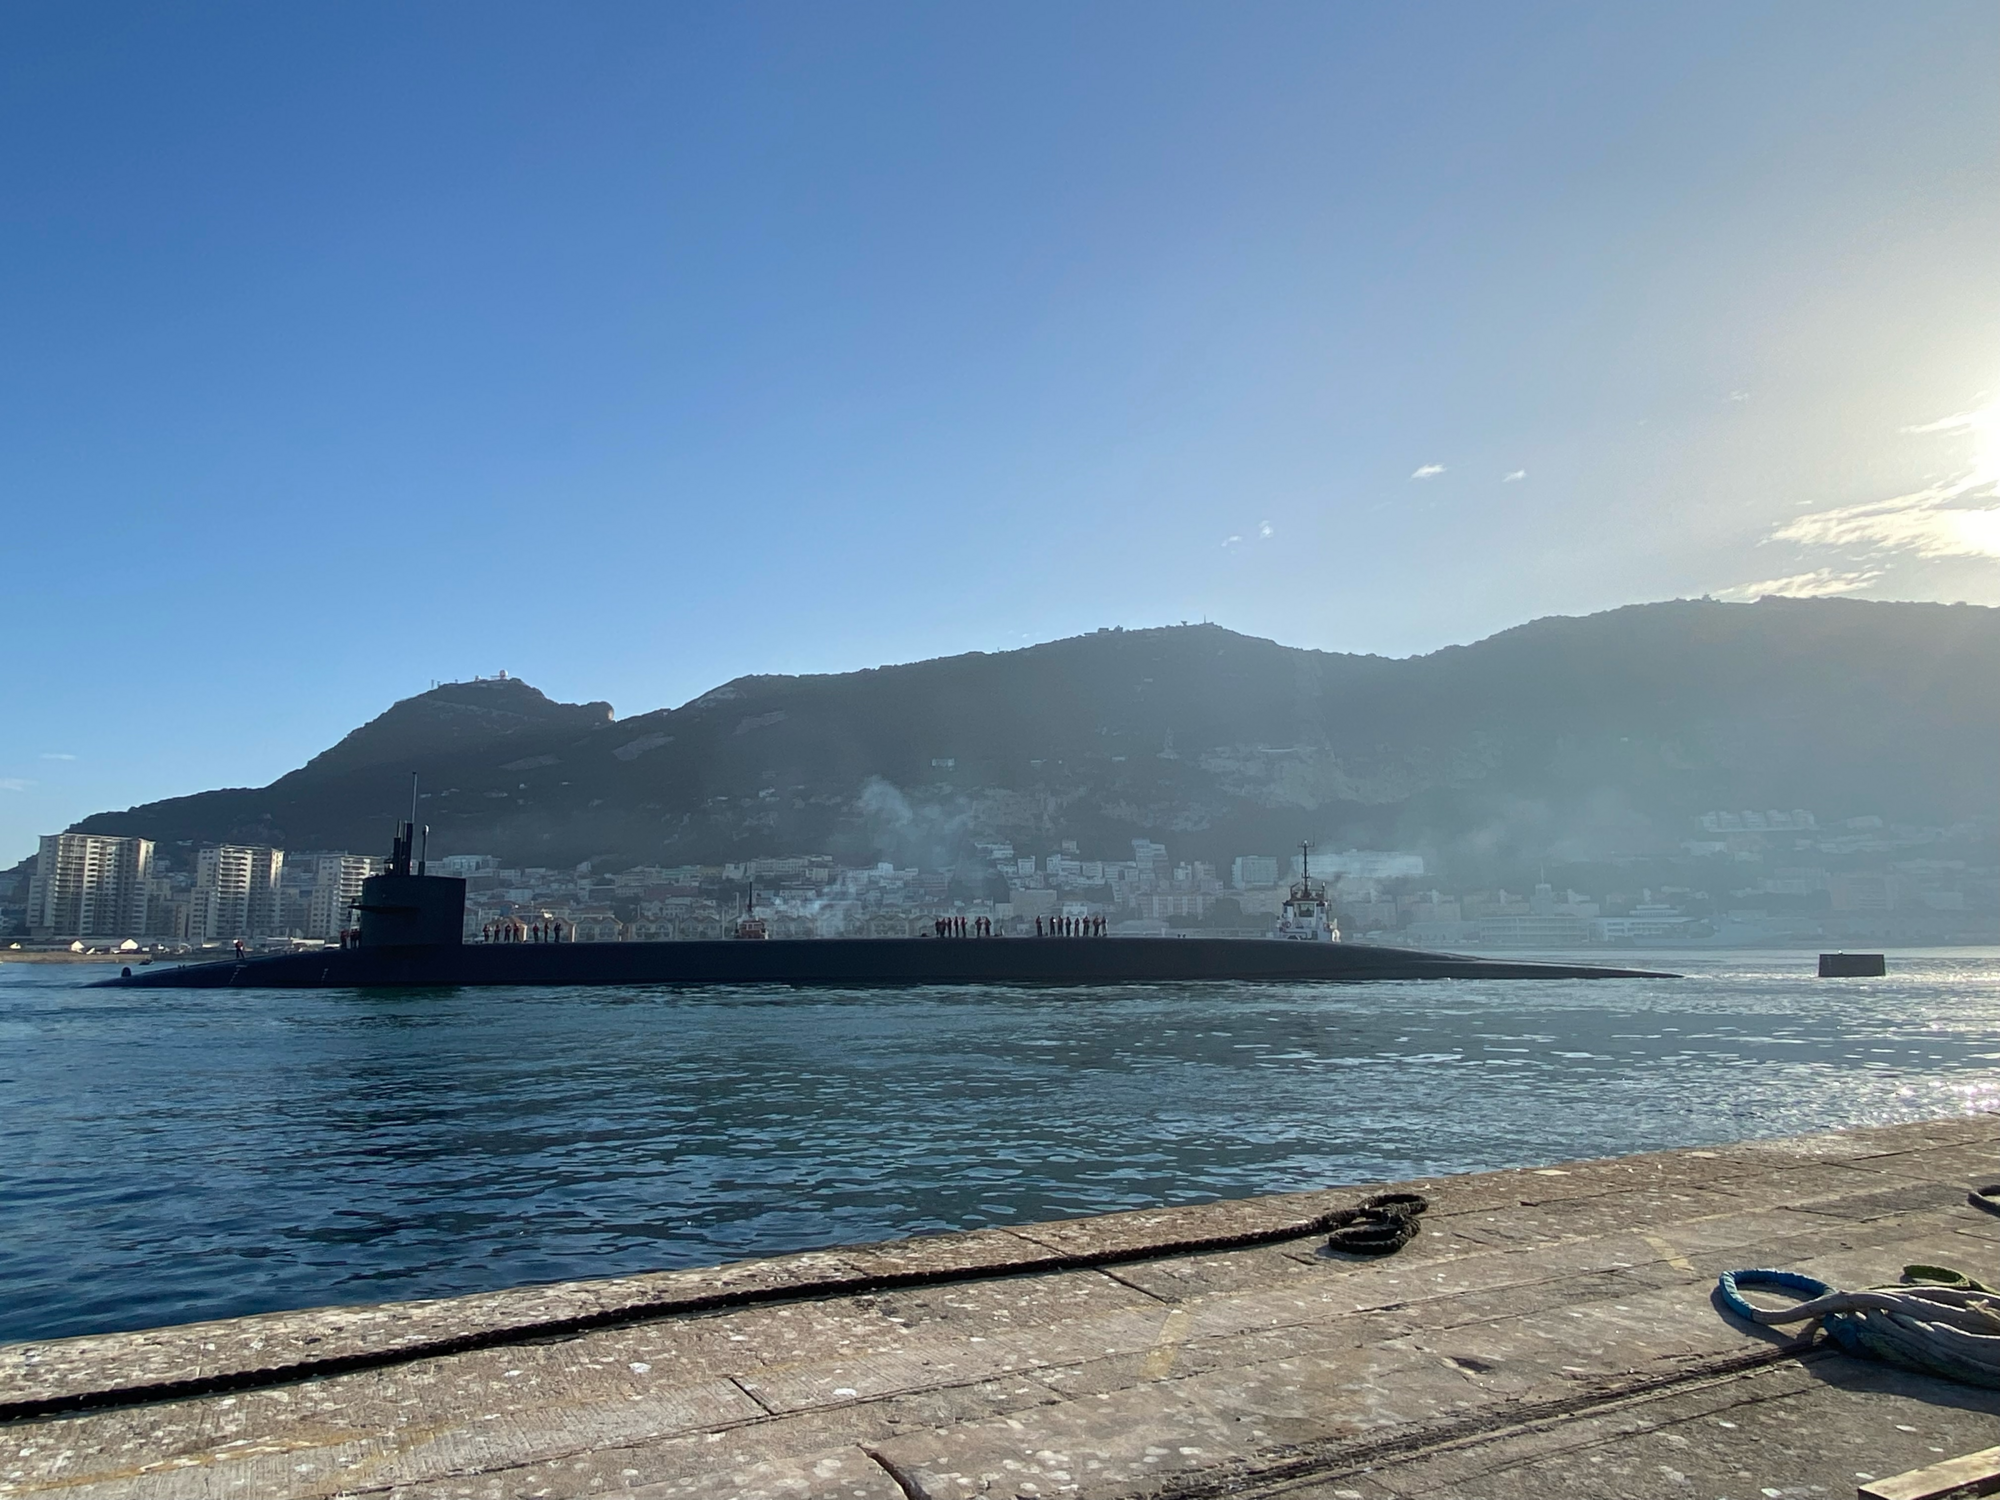 "Послание" для Путина: в Средиземное море зашла атомная подлодка USS Rhode Island с ракетами Trident. Фото и видео